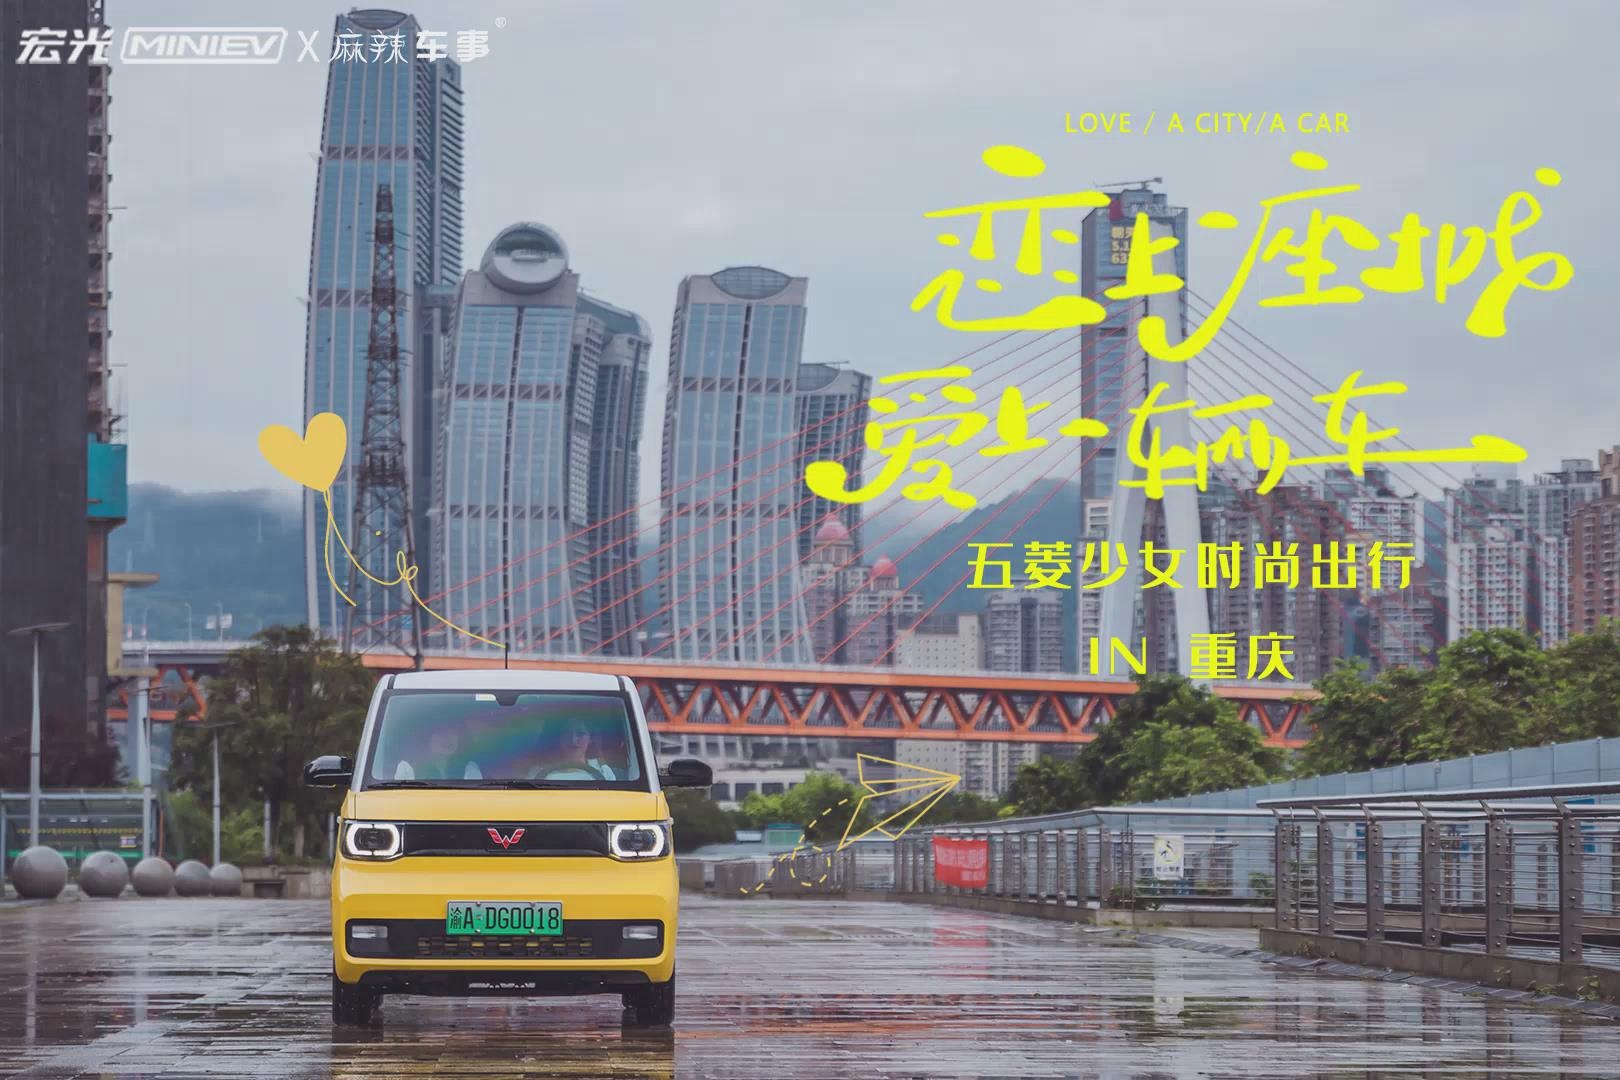 宏光MINIEV马卡龙在重庆开启夏日专属浪漫和惊喜